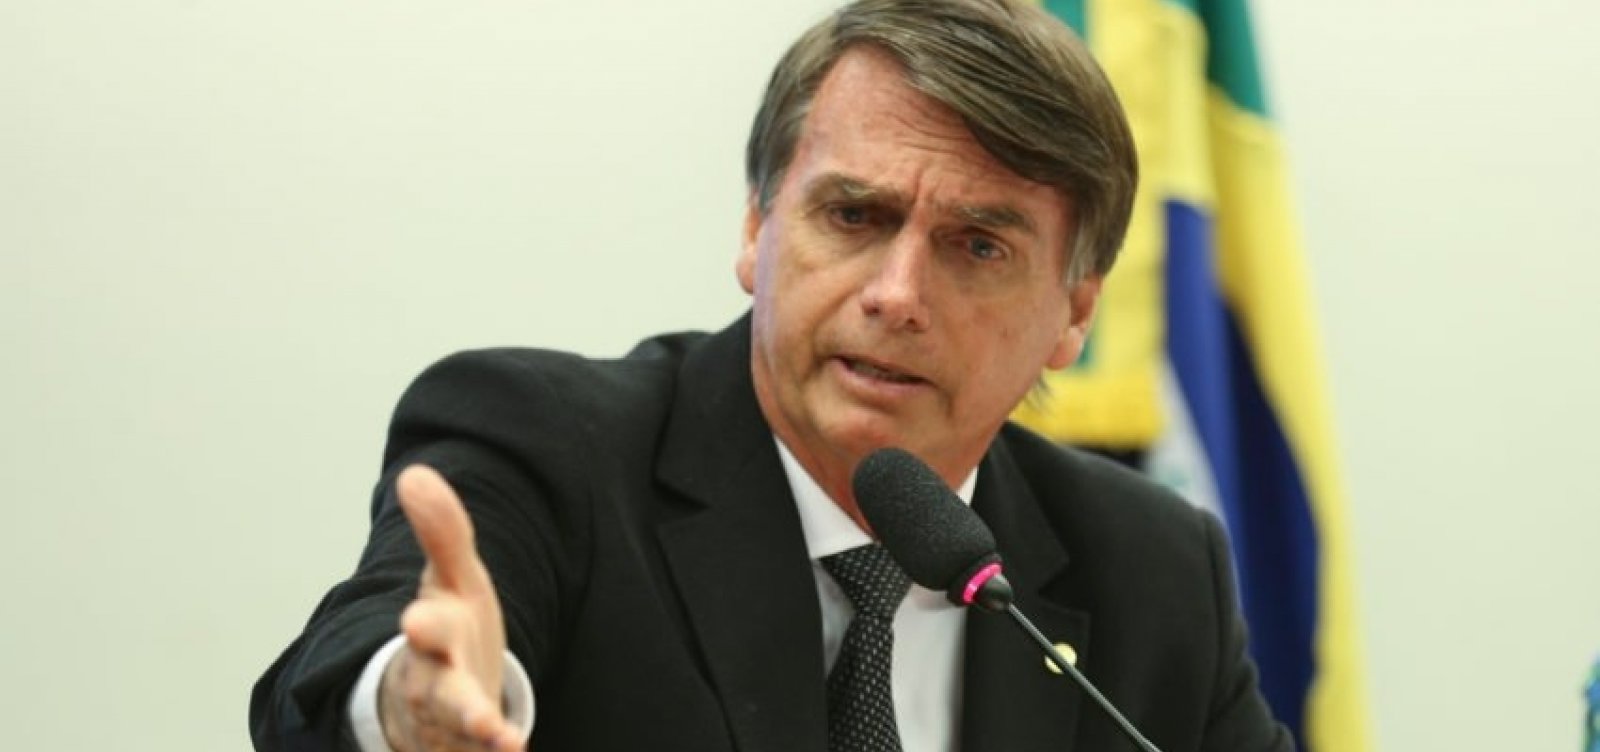 Médicos afirmam que estado de Bolsonaro é 'naturalmente grave'